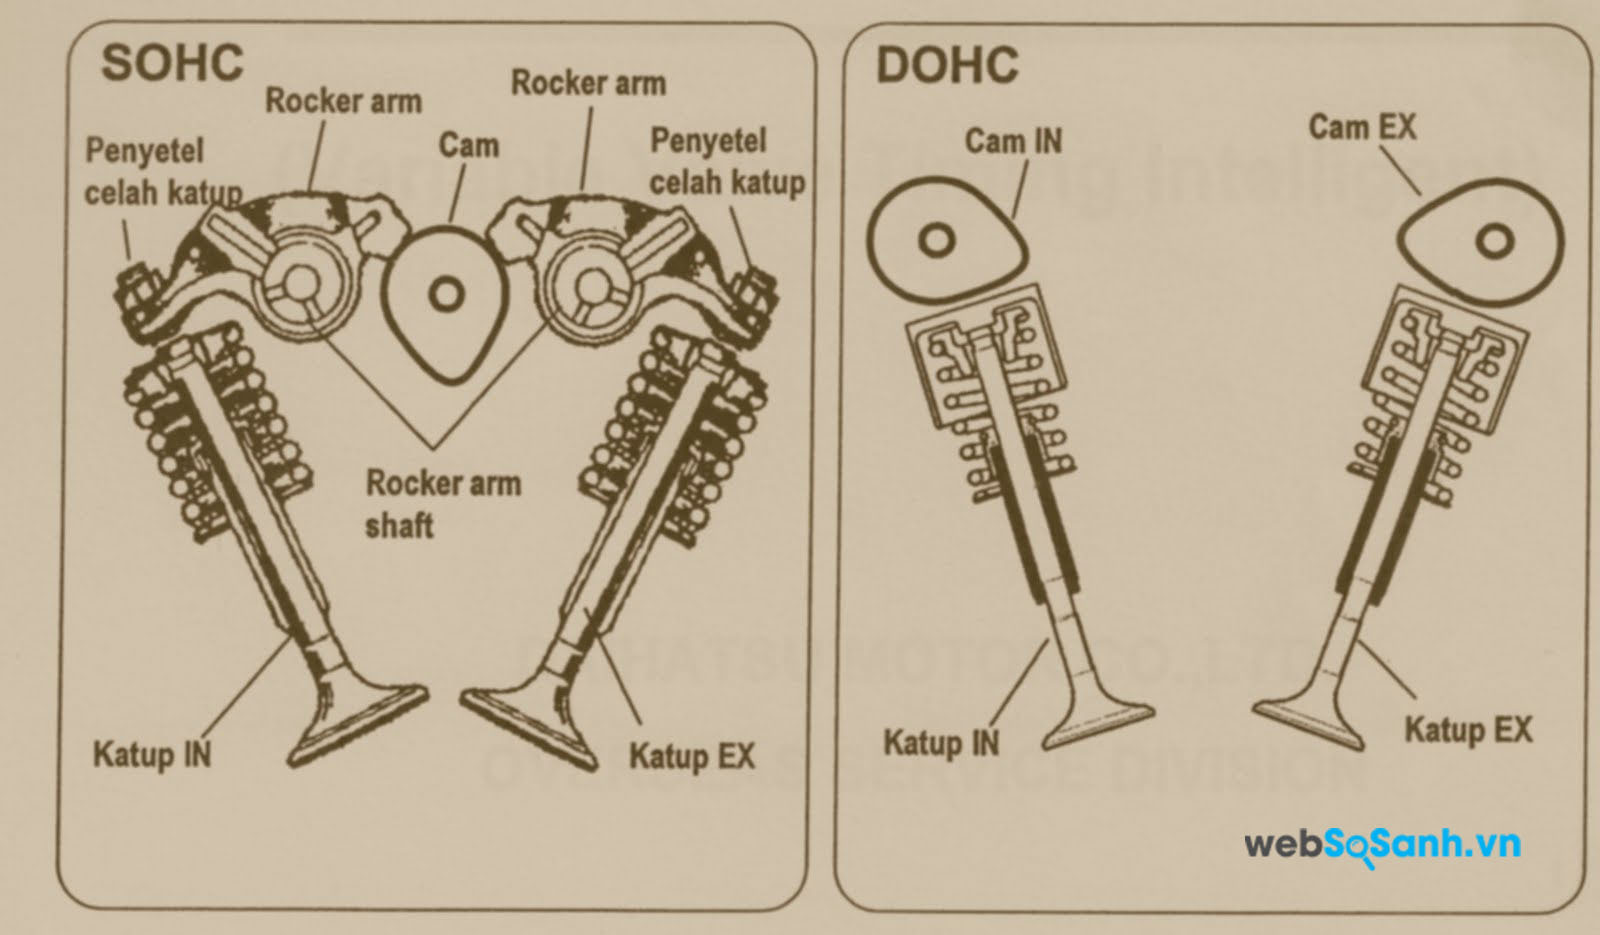 Sự khác biệt trong sơ đồ cấu tạo của SOHC và DOHC